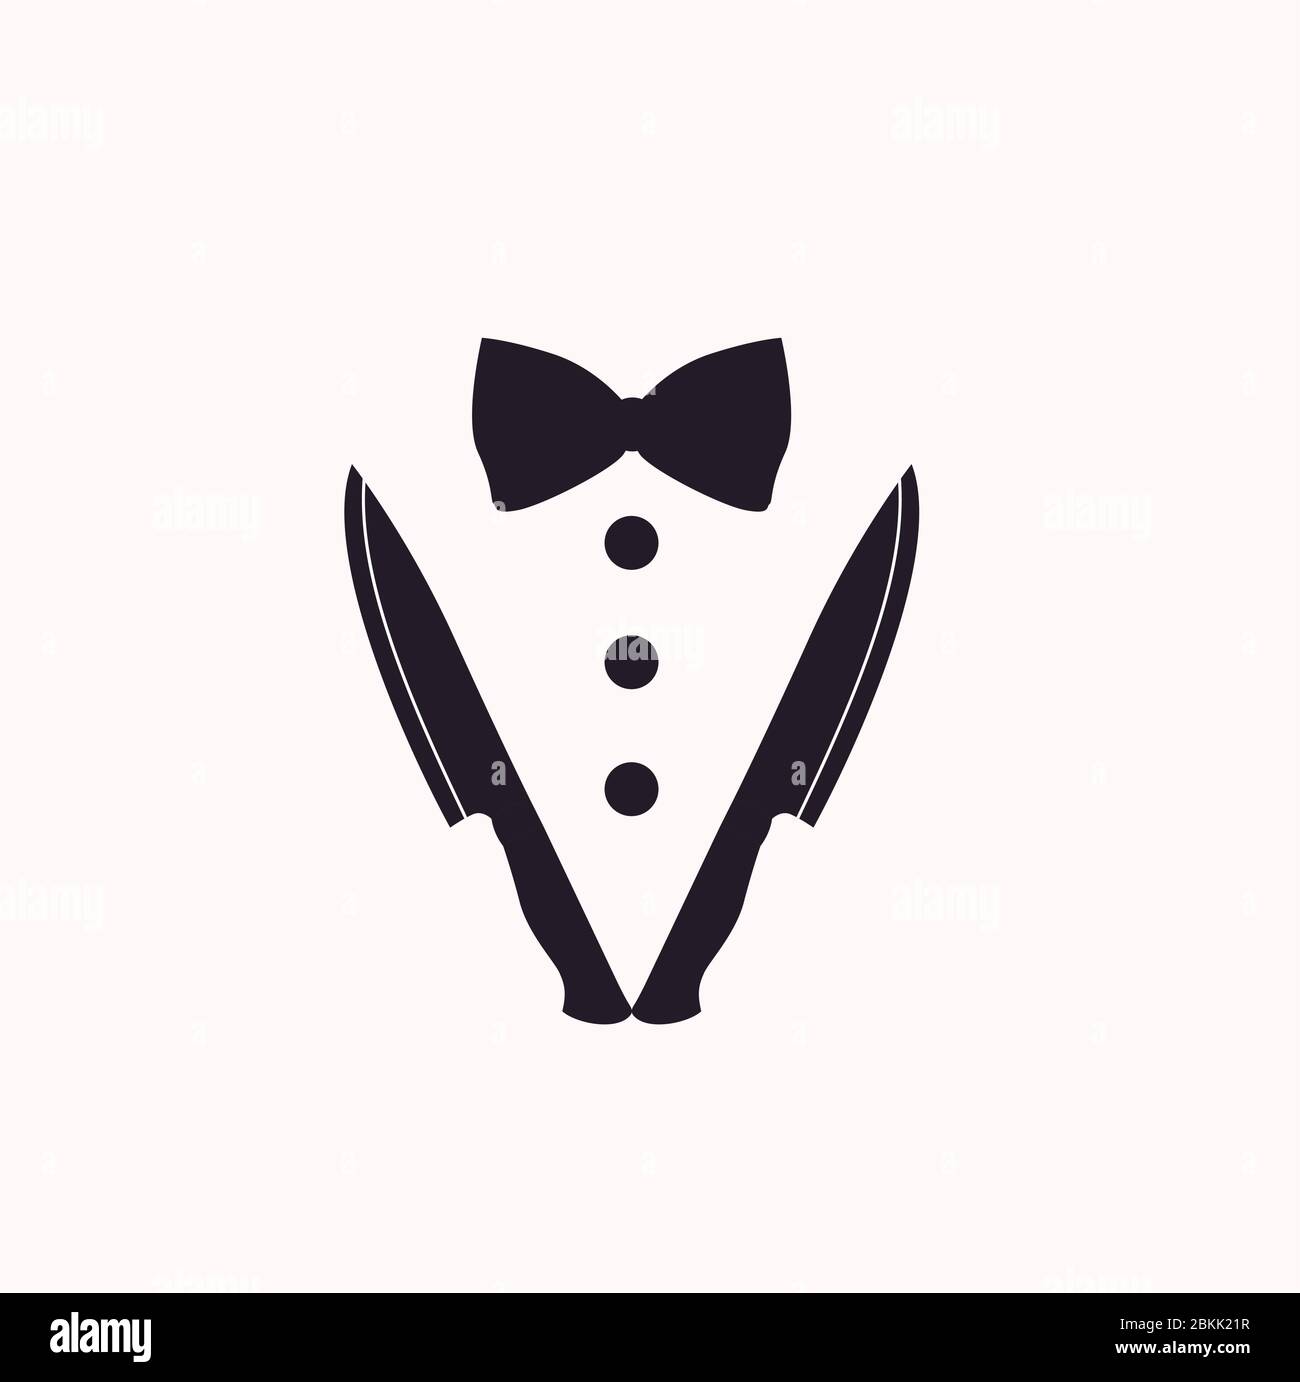 Bow Tie, Knives, Restaurant Dinner or kitchen logo design Stock Vector